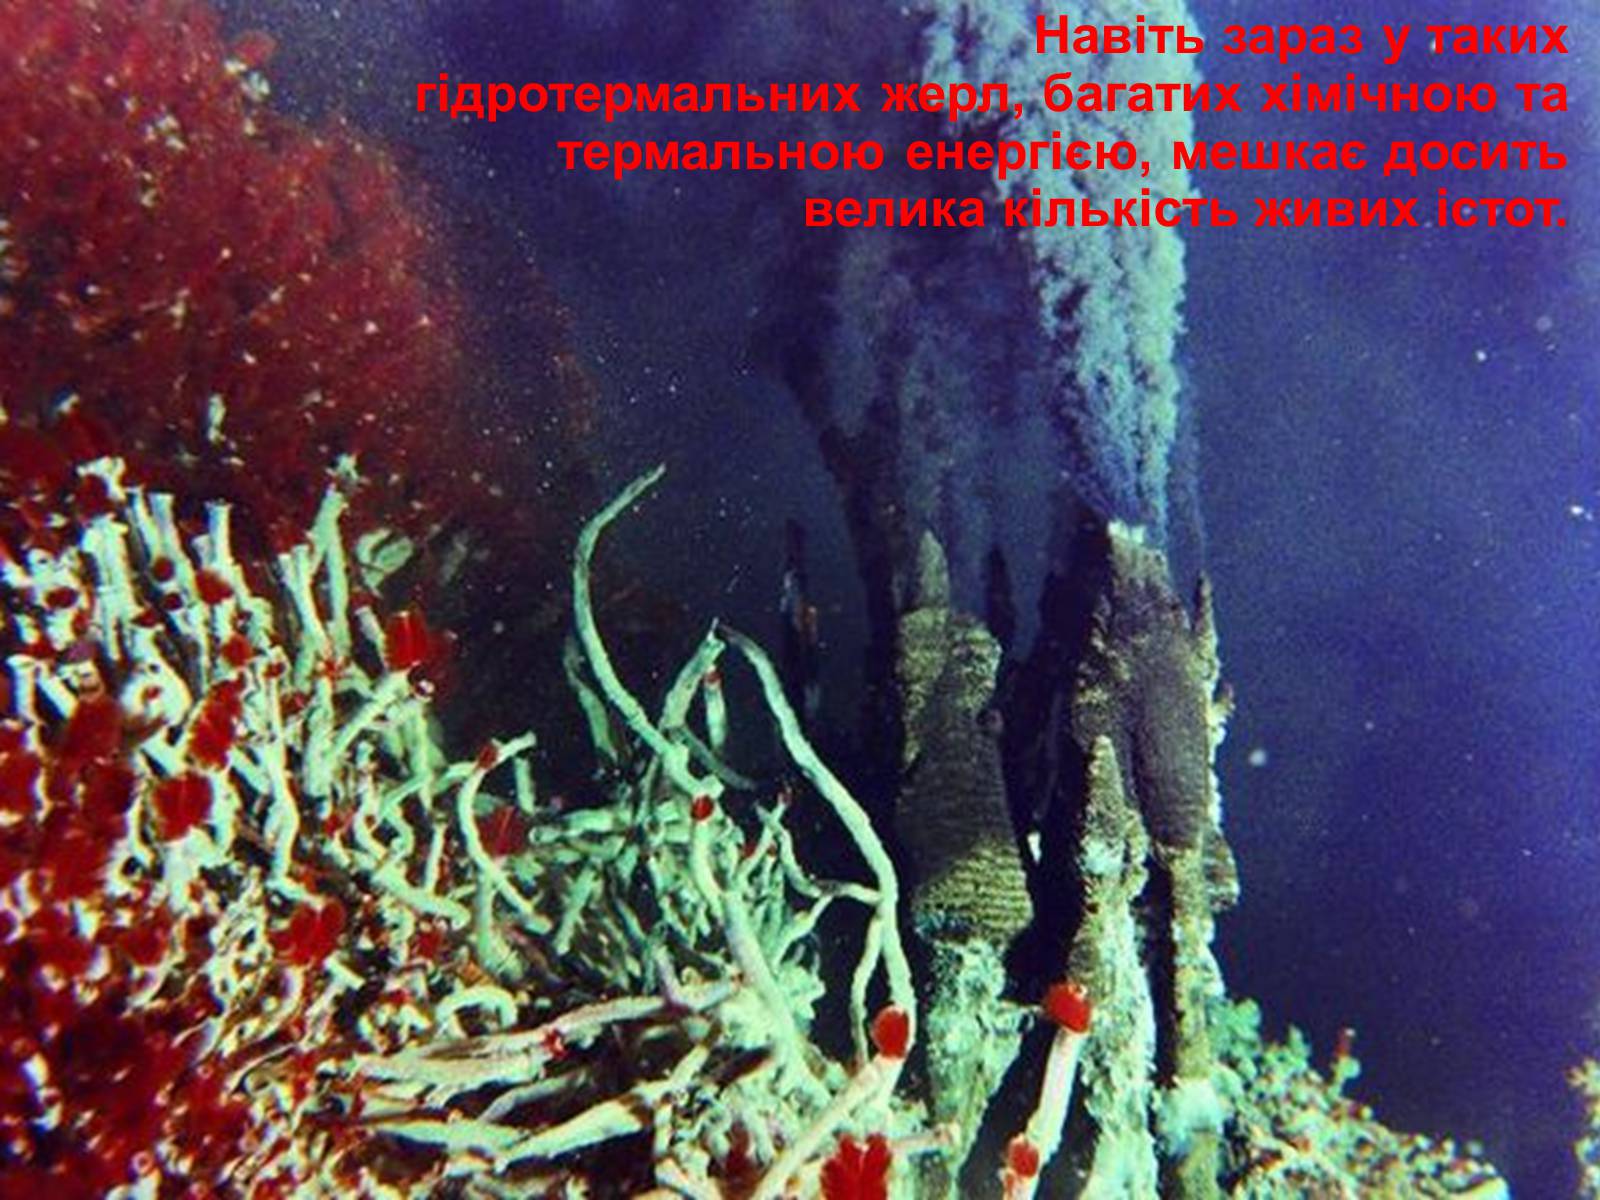 Черные курильщики океана. Черные курильщики». Гидротермальные источники в океане.. Тихий океан гидротермальные источники. Черные курильщики. Чёрные курильщики на дне океанов.